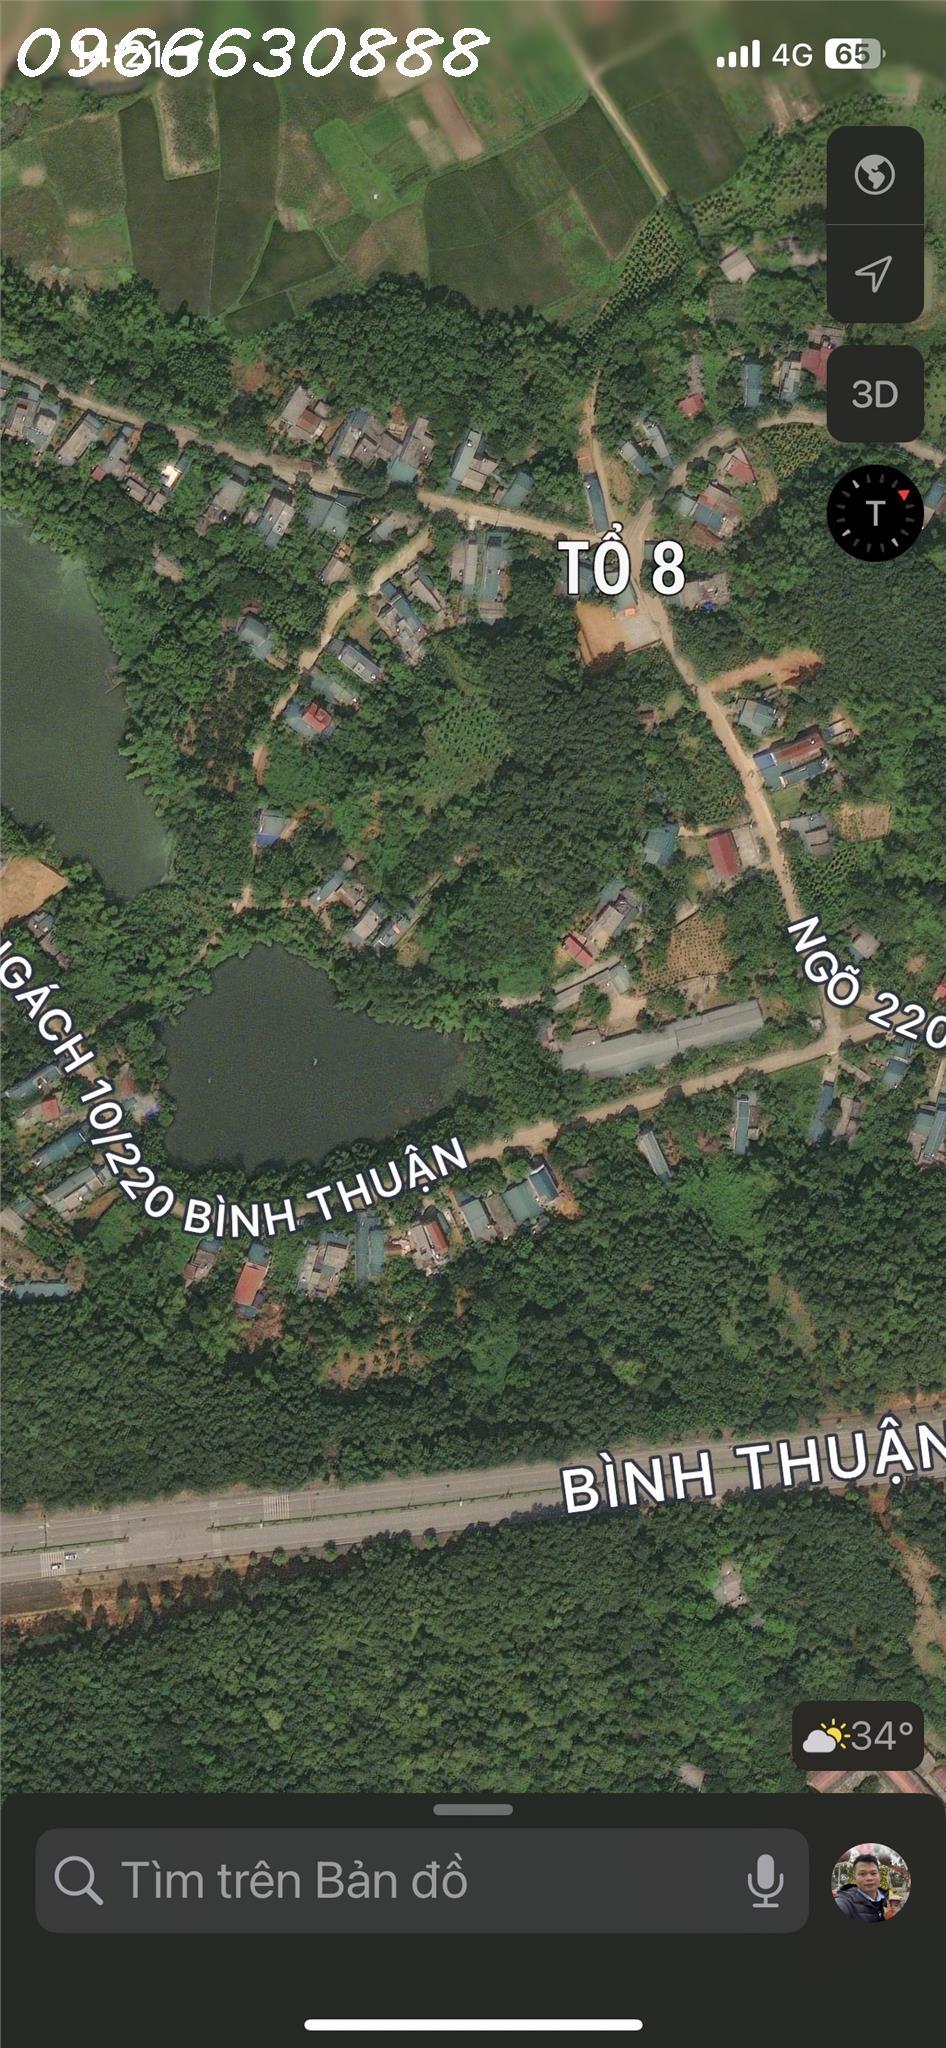 Gia đình cần bán mảnh đất tại khu vực Đất tổ 8, phường Hưng Thành, đường lên BIGC GO chuẩn bị làm.1472768